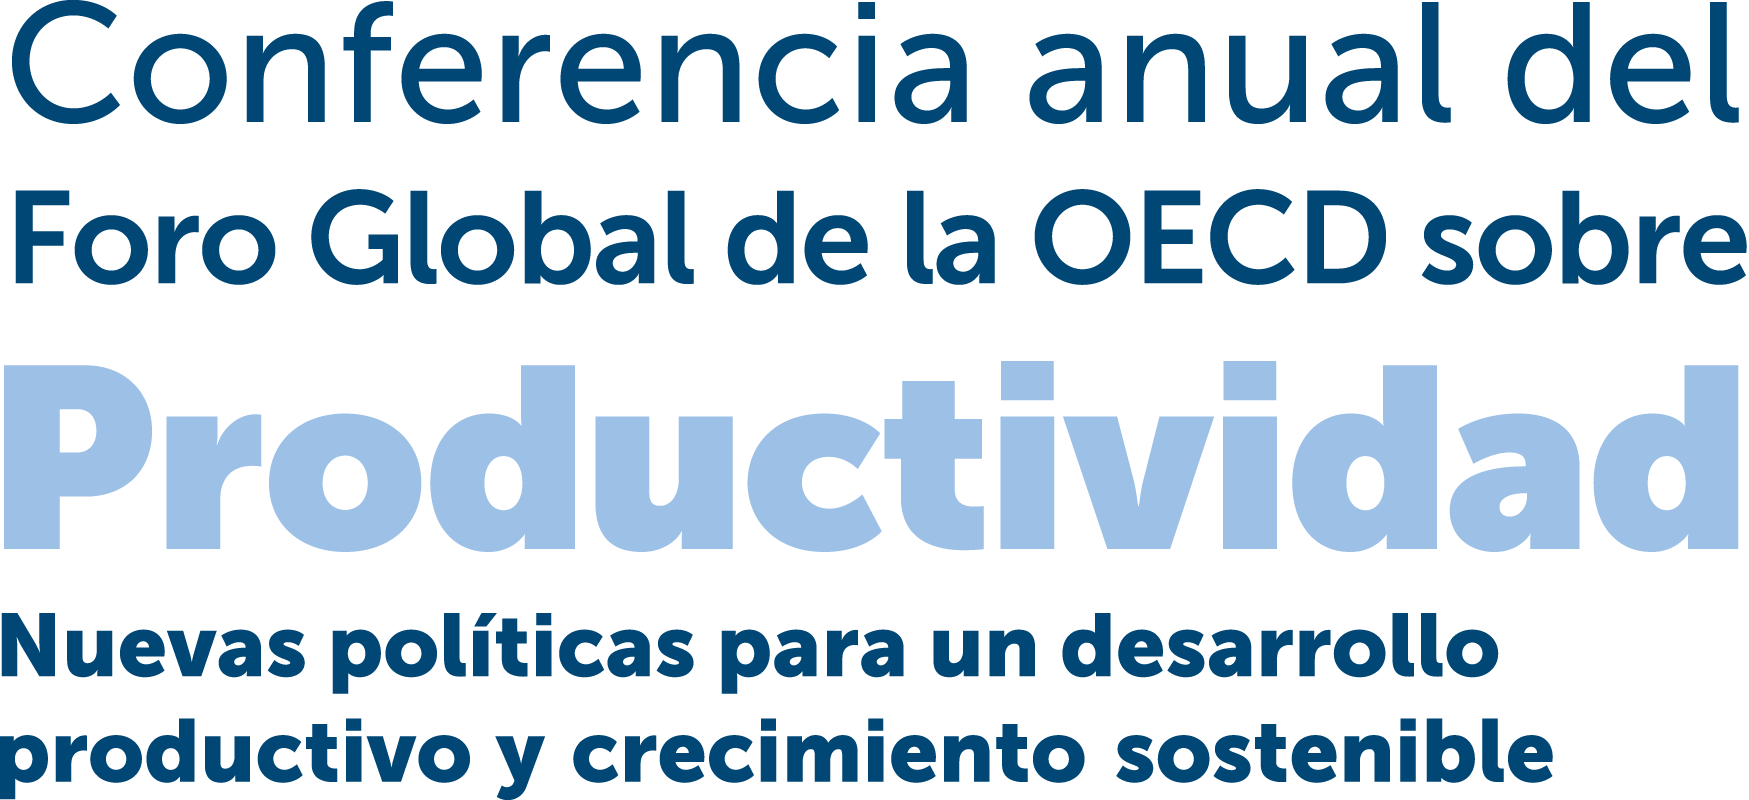 Título Conferencia OECD